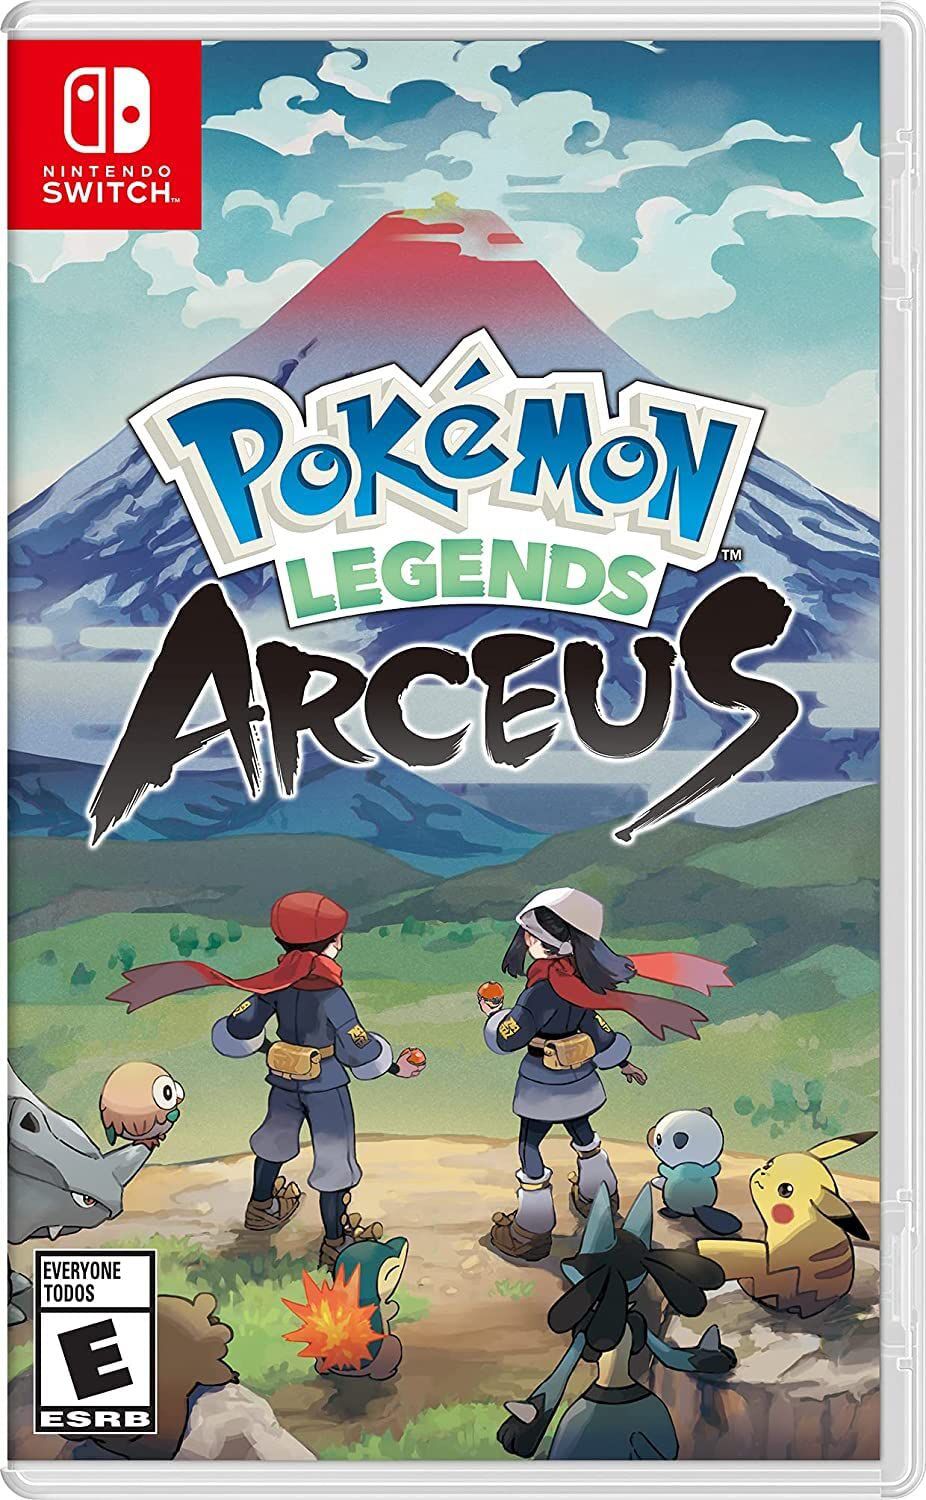 Joguei Pokémon Legends Arceus PT-BR GBA Pra Celular FEITO EM